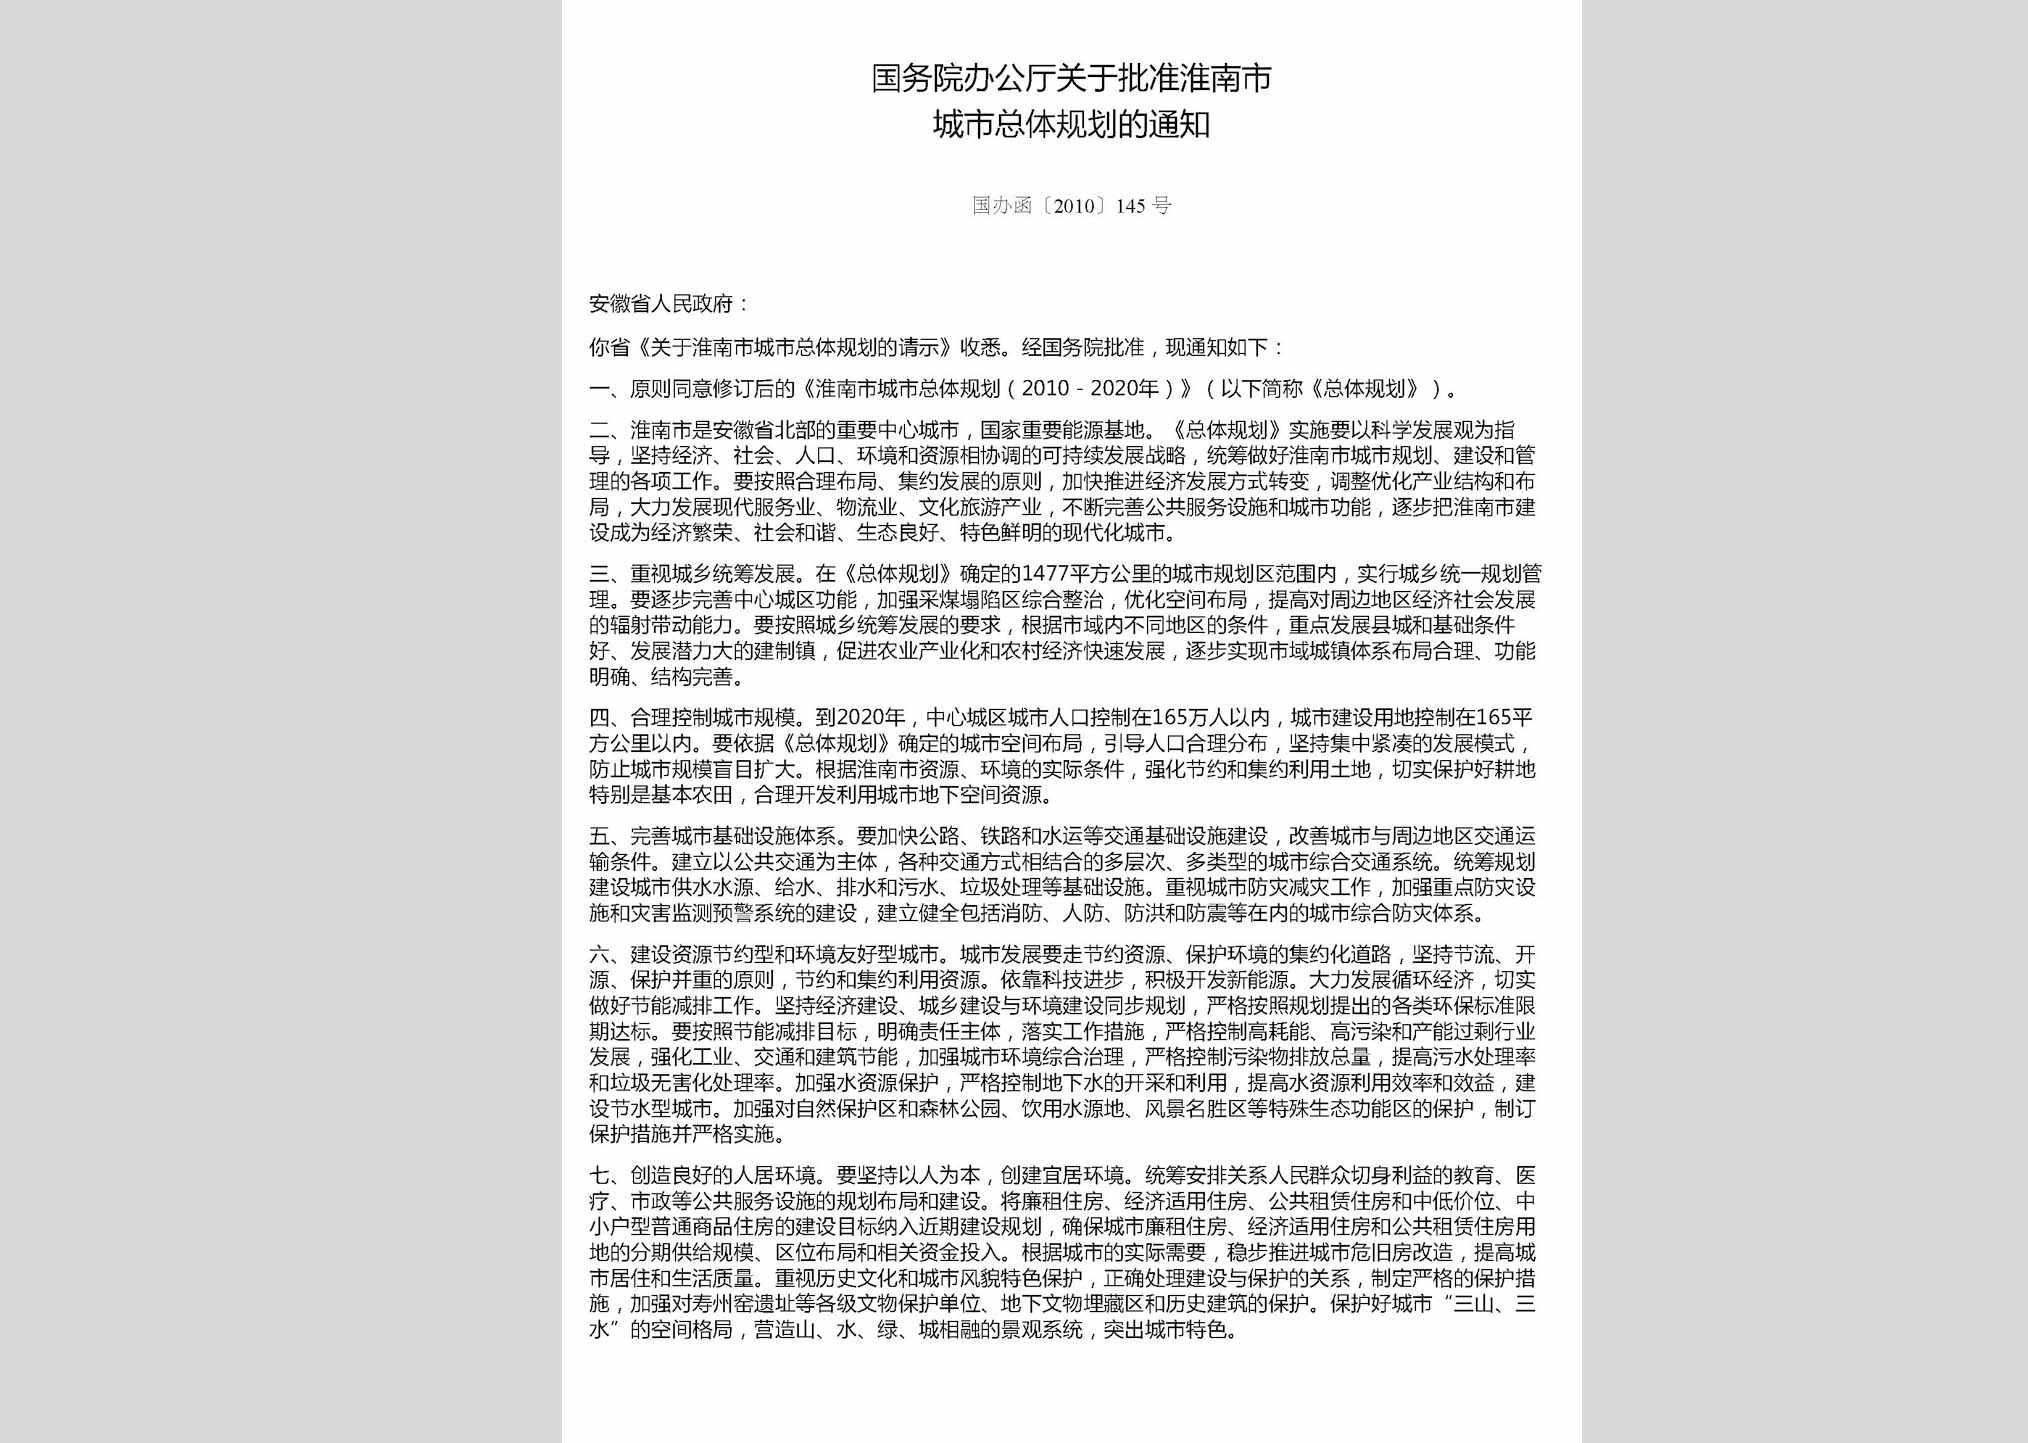 国办函[2010]145号：国务院办公厅关于批准淮南市城市总体规划的通知